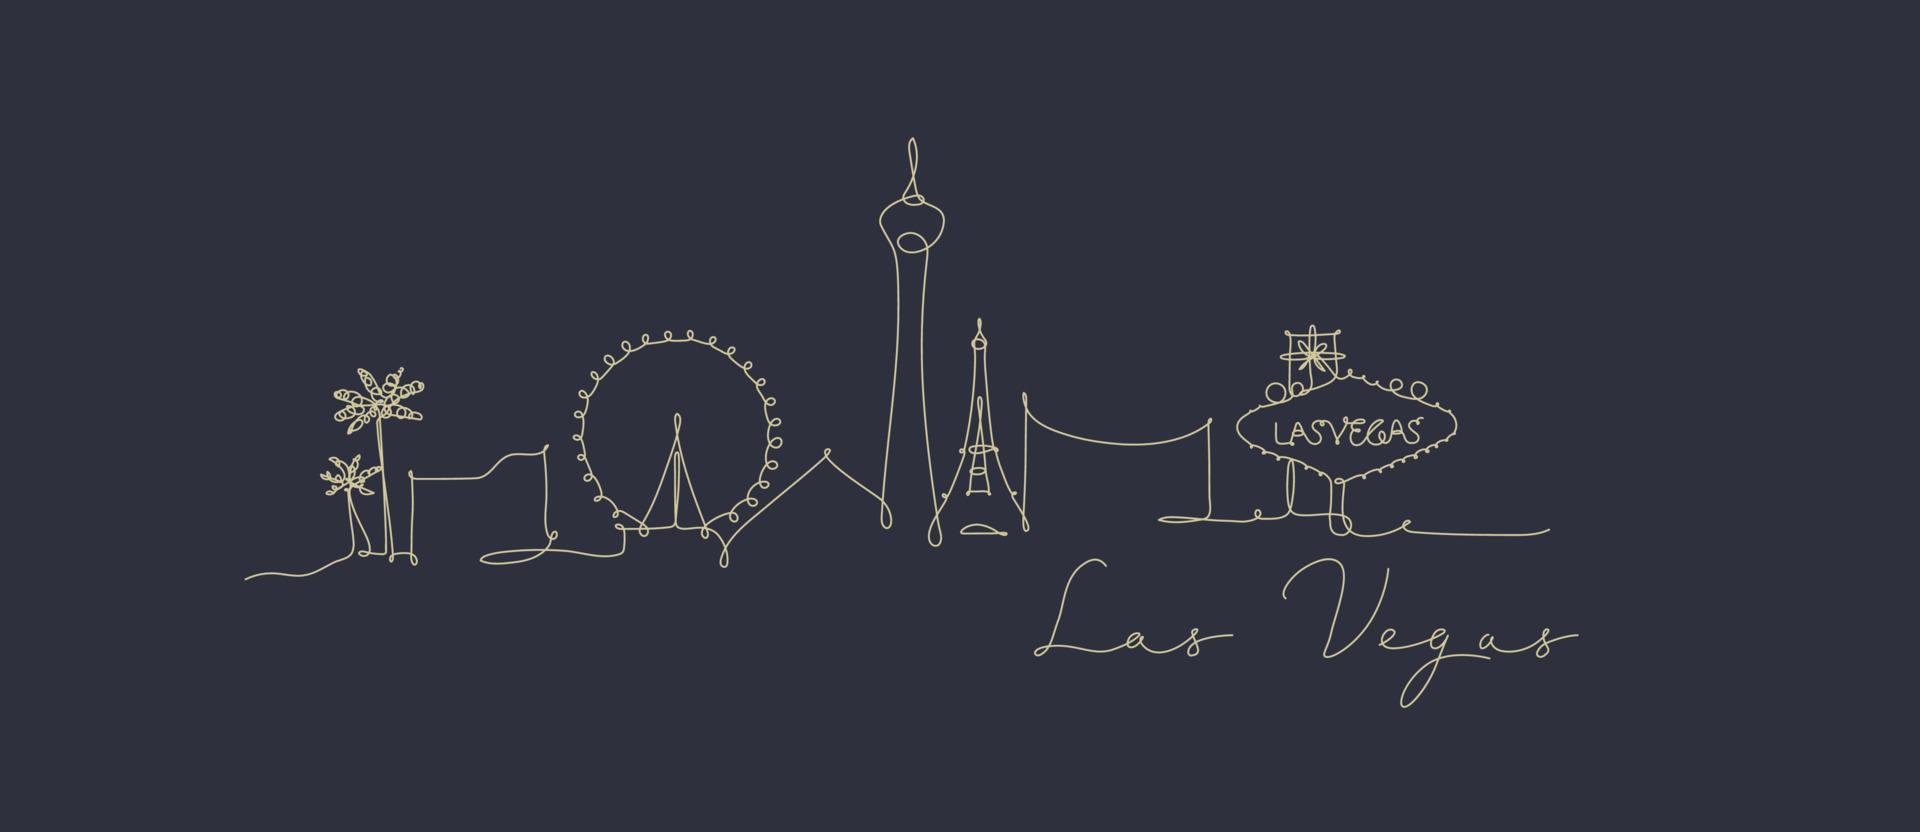 silhouette de la ville las vegas dans le style de ligne de stylo dessin avec des lignes beiges sur fond bleu foncé vecteur